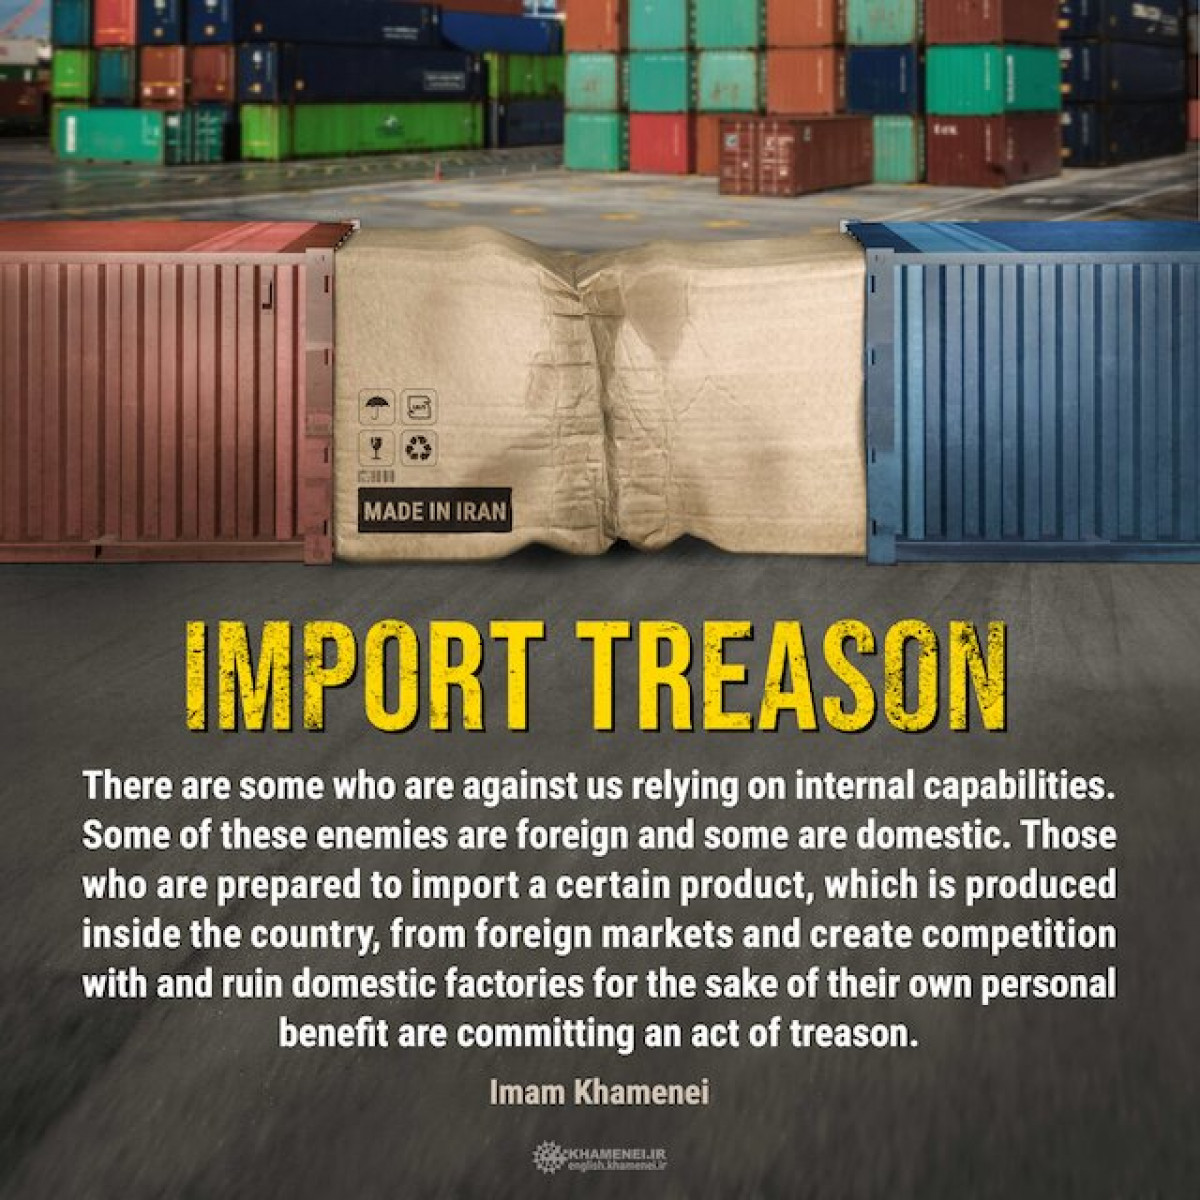 Import treason